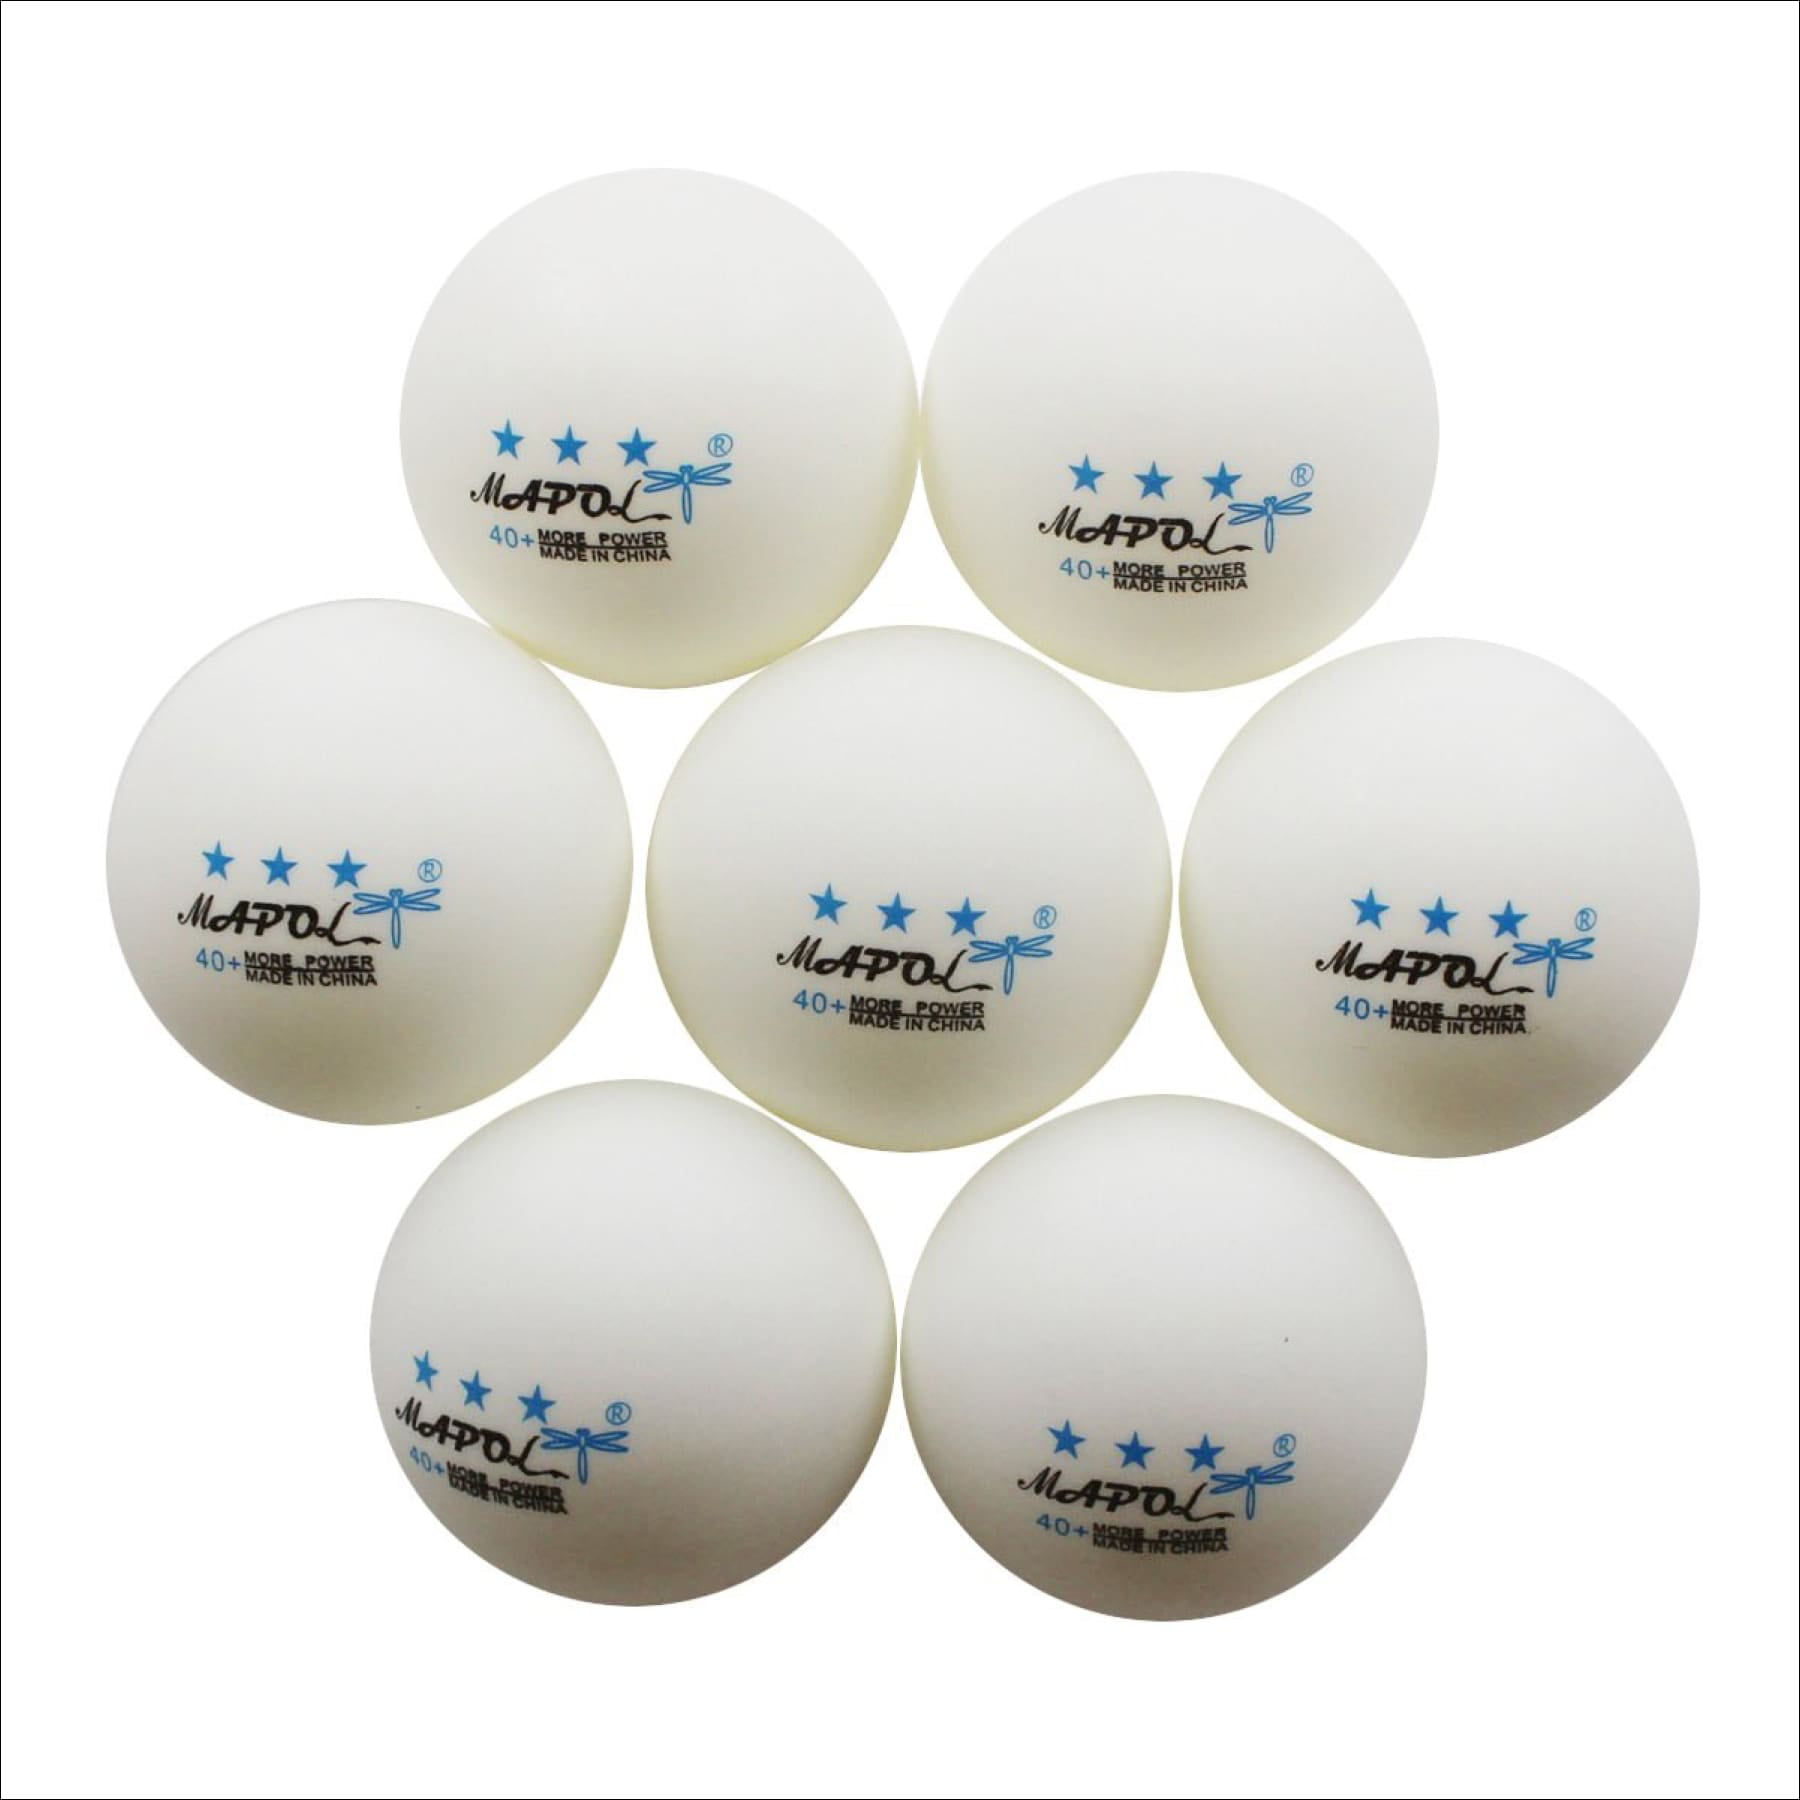 MAPOL  50 Orange 3-star 40mm Table Tennis Ball Advanced Training Ping Pong B... 